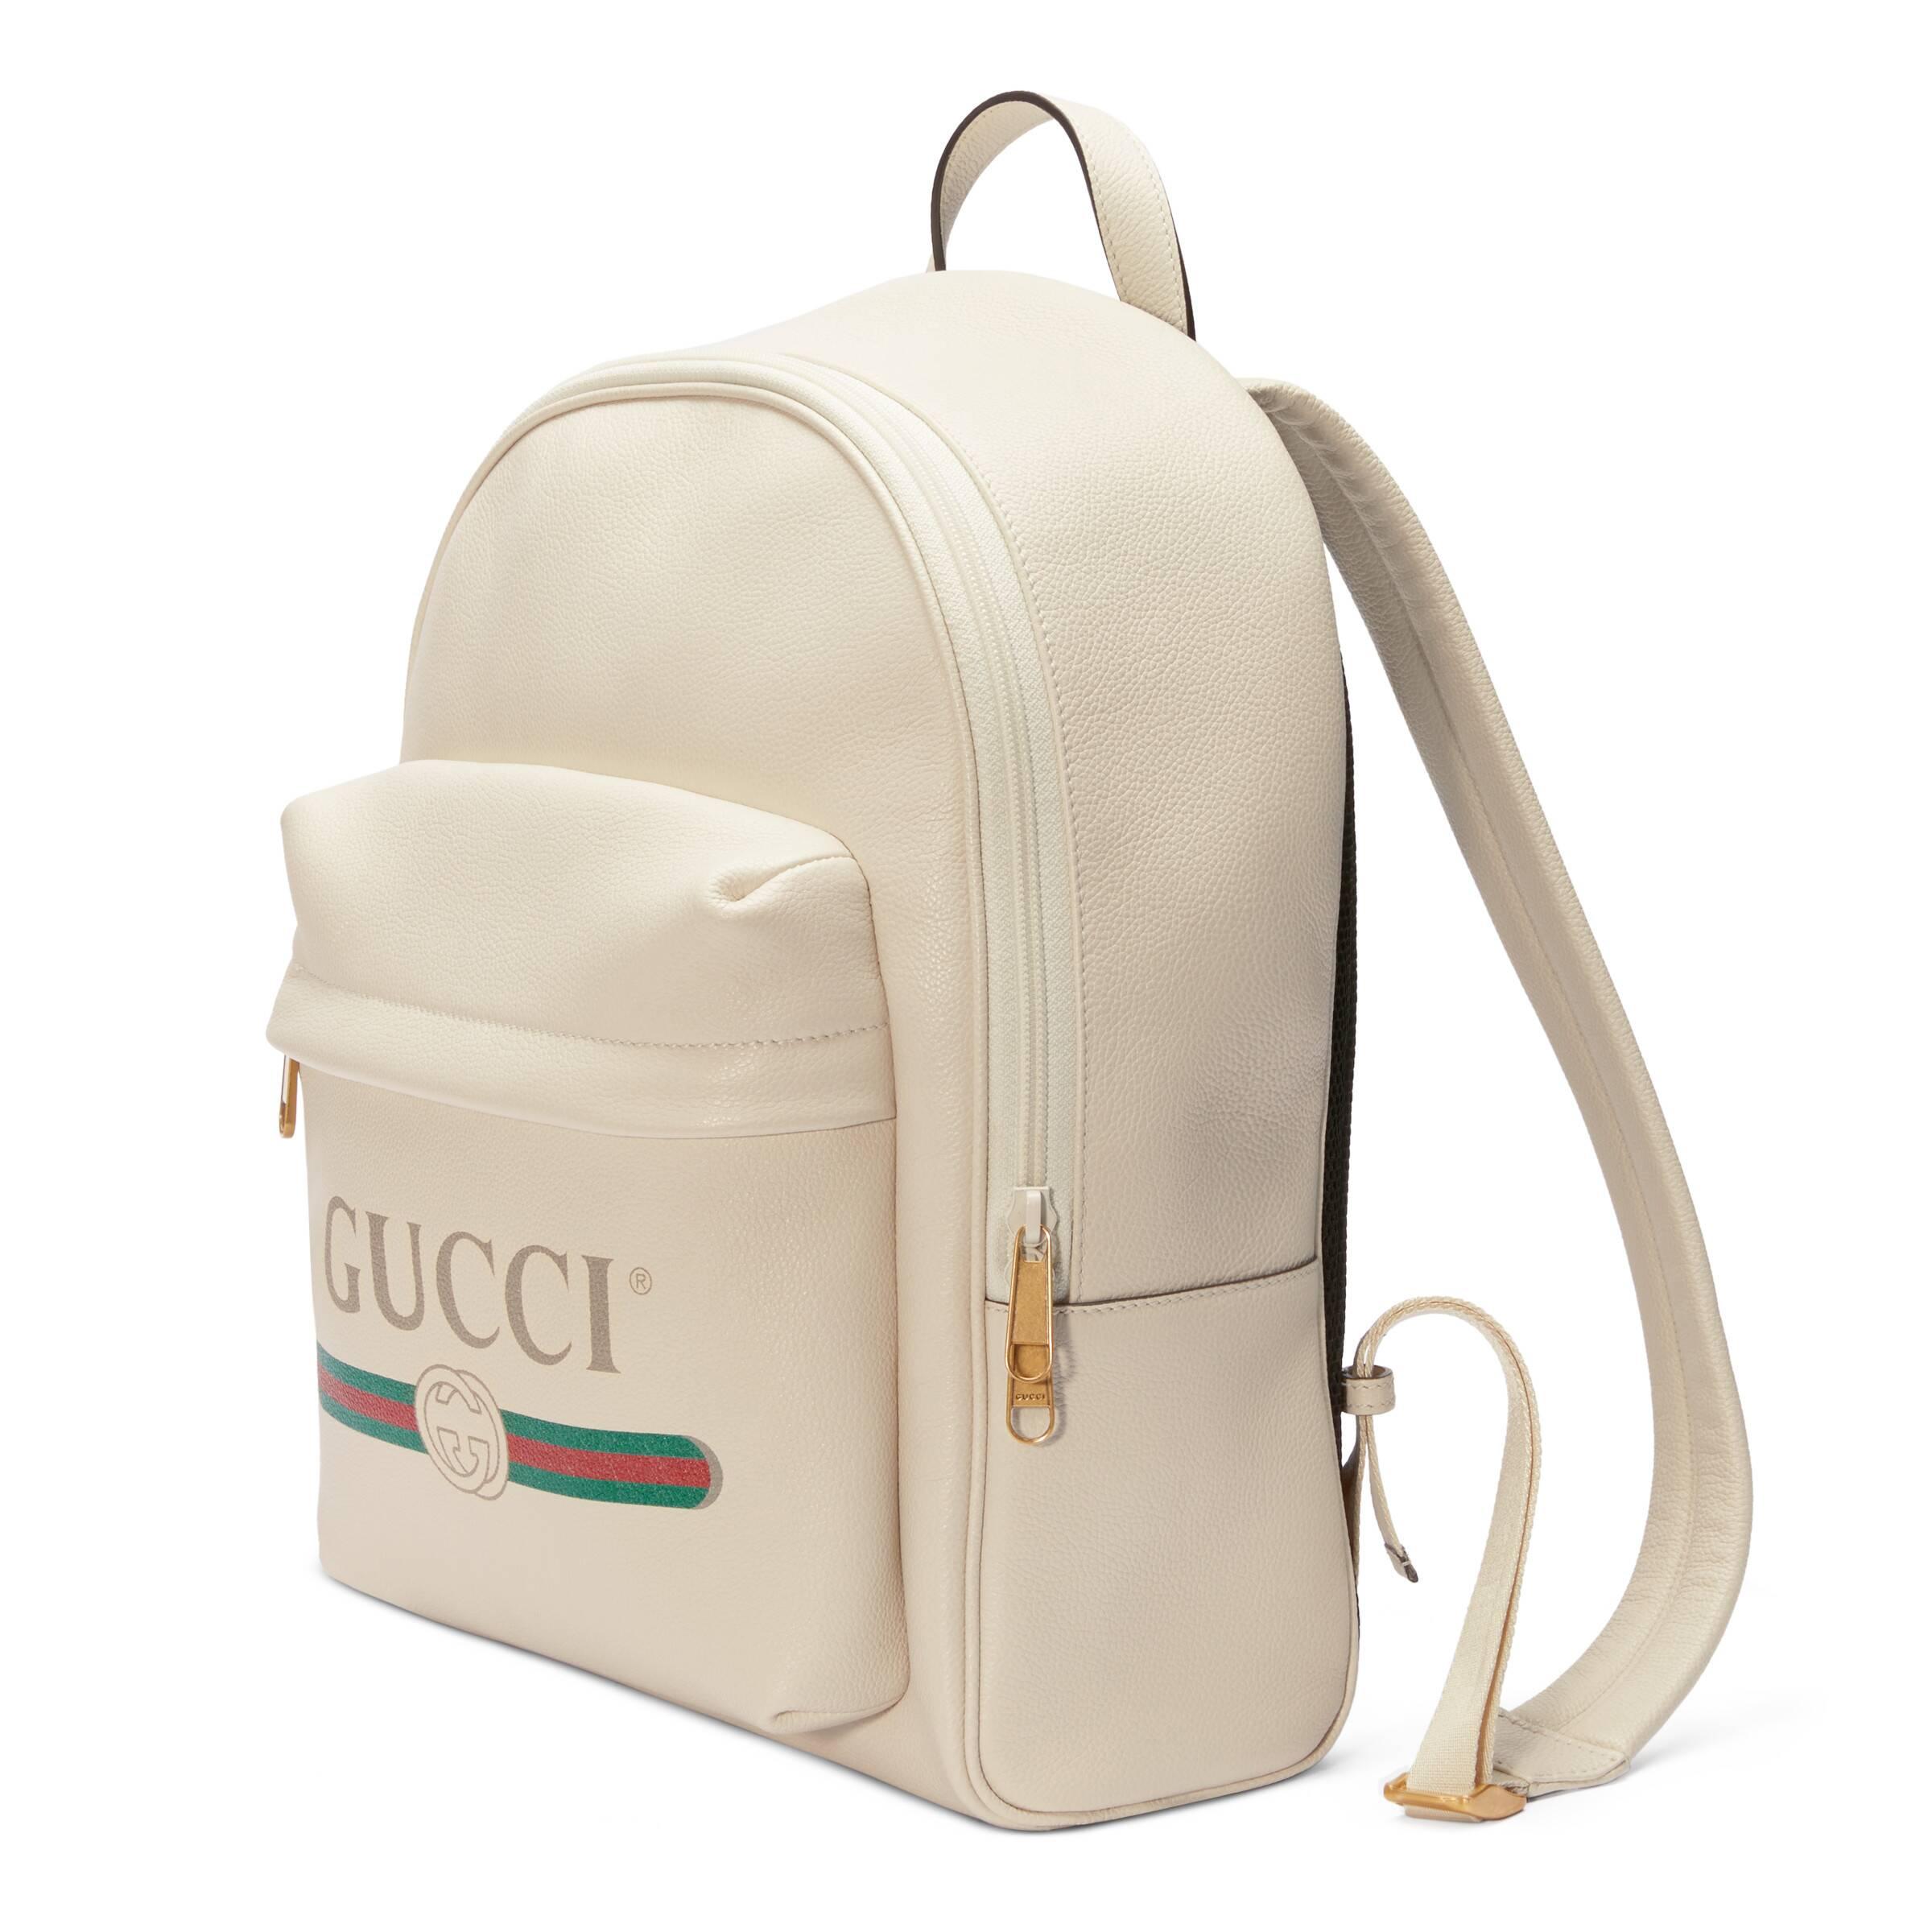 gucci print backpack